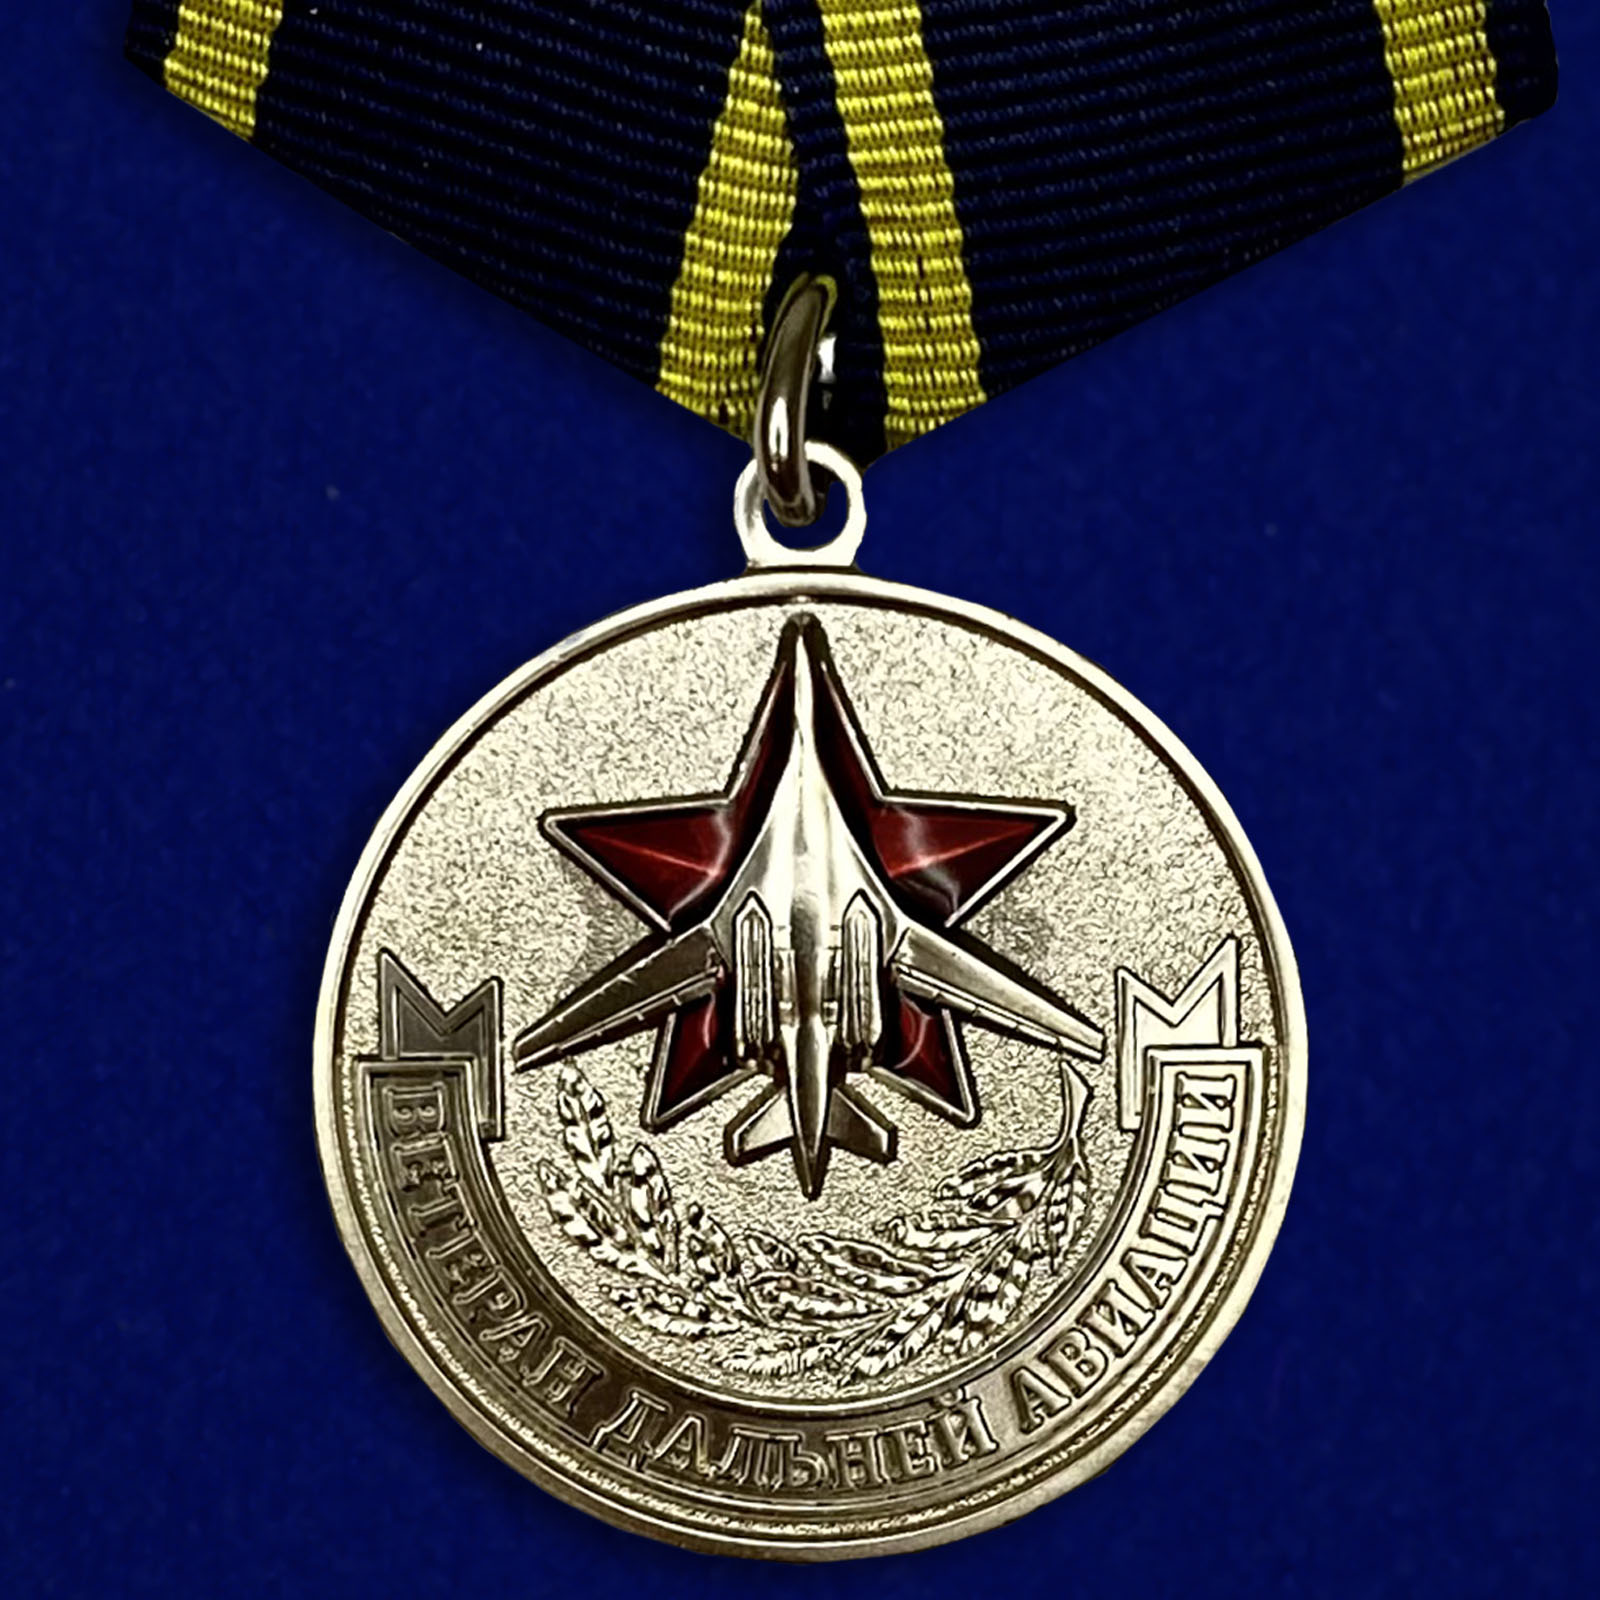 Купить медаль Дальней авиации (Ветеран) на подставке в подарок